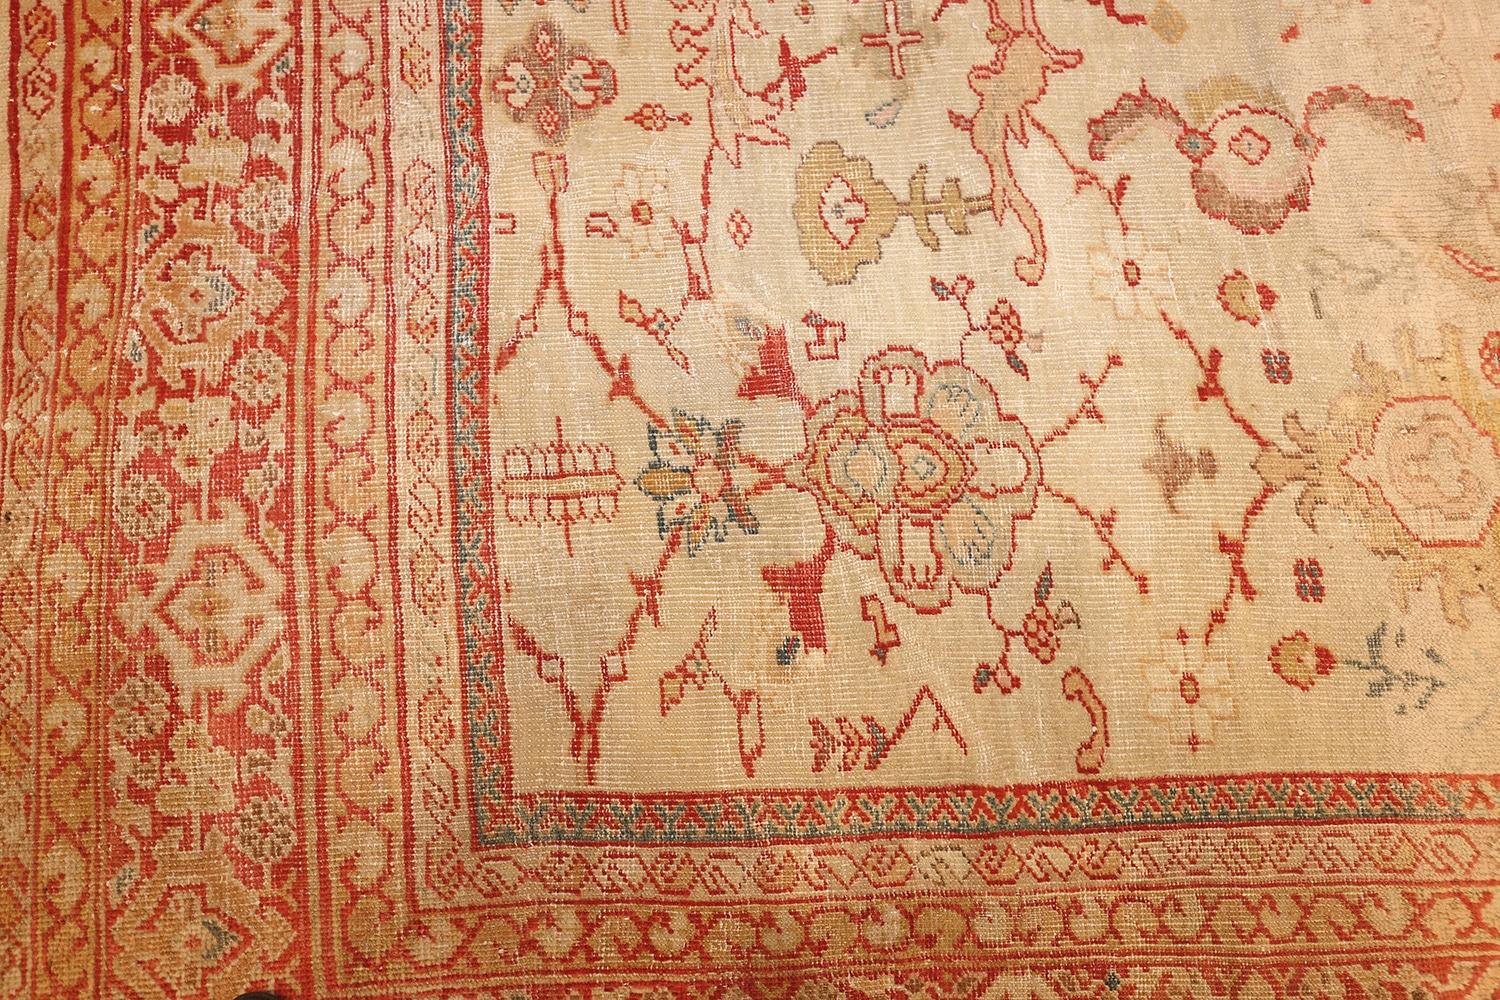 Elfenbeinfarbener Hintergrund Antiker persischer Sultanabad-Teppich, Herkunftsland / Teppichart: Persische Teppiche, Circa-Datum: 1880 - Größe: 9 ft x 12 ft 2 in (2,74 m x 3,71 m)

